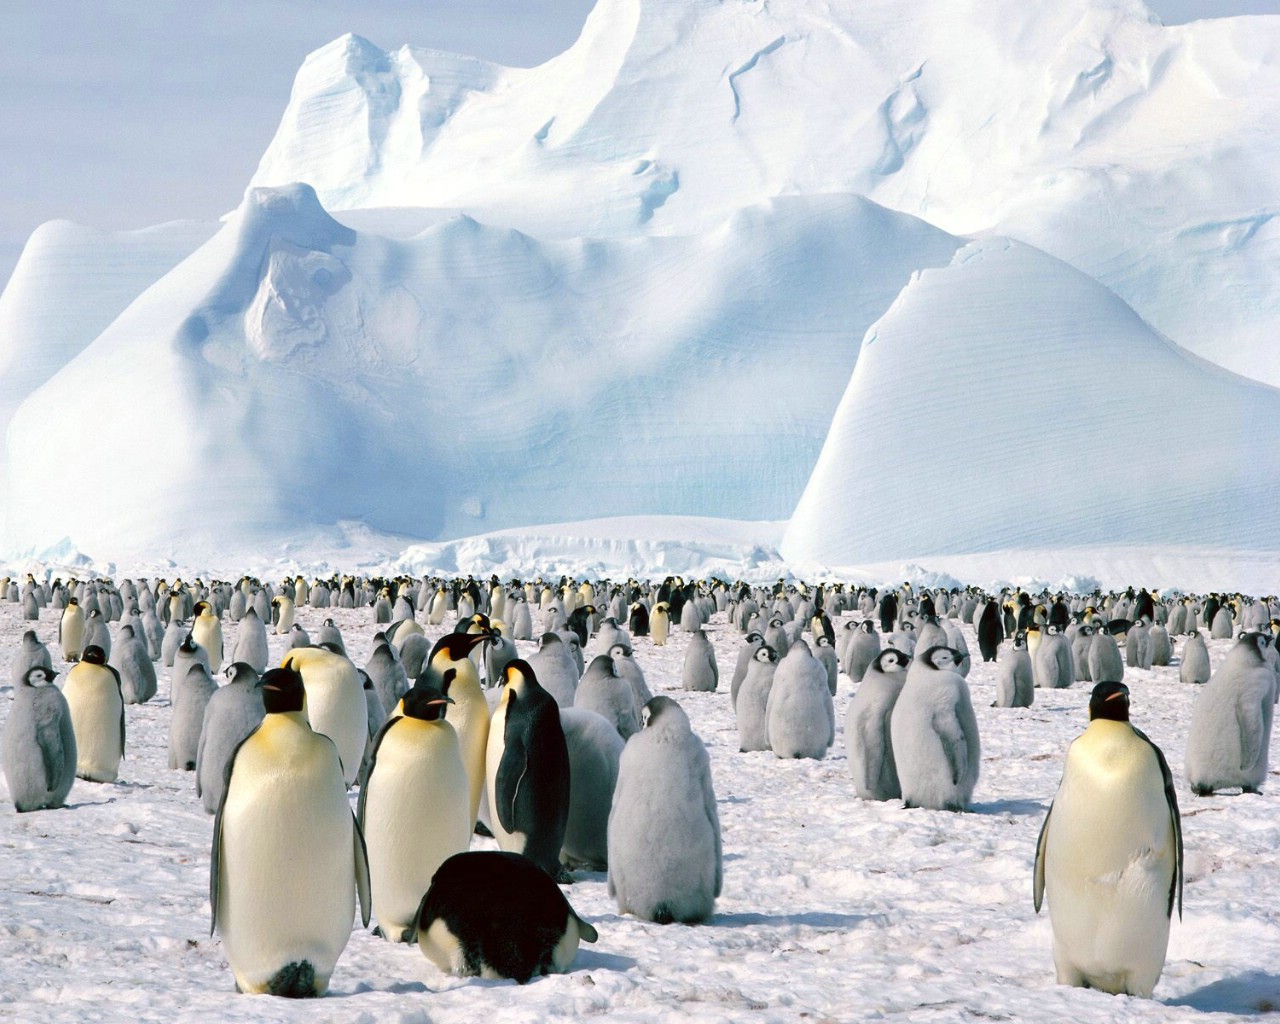 壁纸1280x1024企鹅摄影壁纸 企鹅图片壁纸 penguin Desktop Photos壁纸 企鹅壁纸壁纸 企鹅壁纸图片 企鹅壁纸素材 动物壁纸 动物图库 动物图片素材桌面壁纸